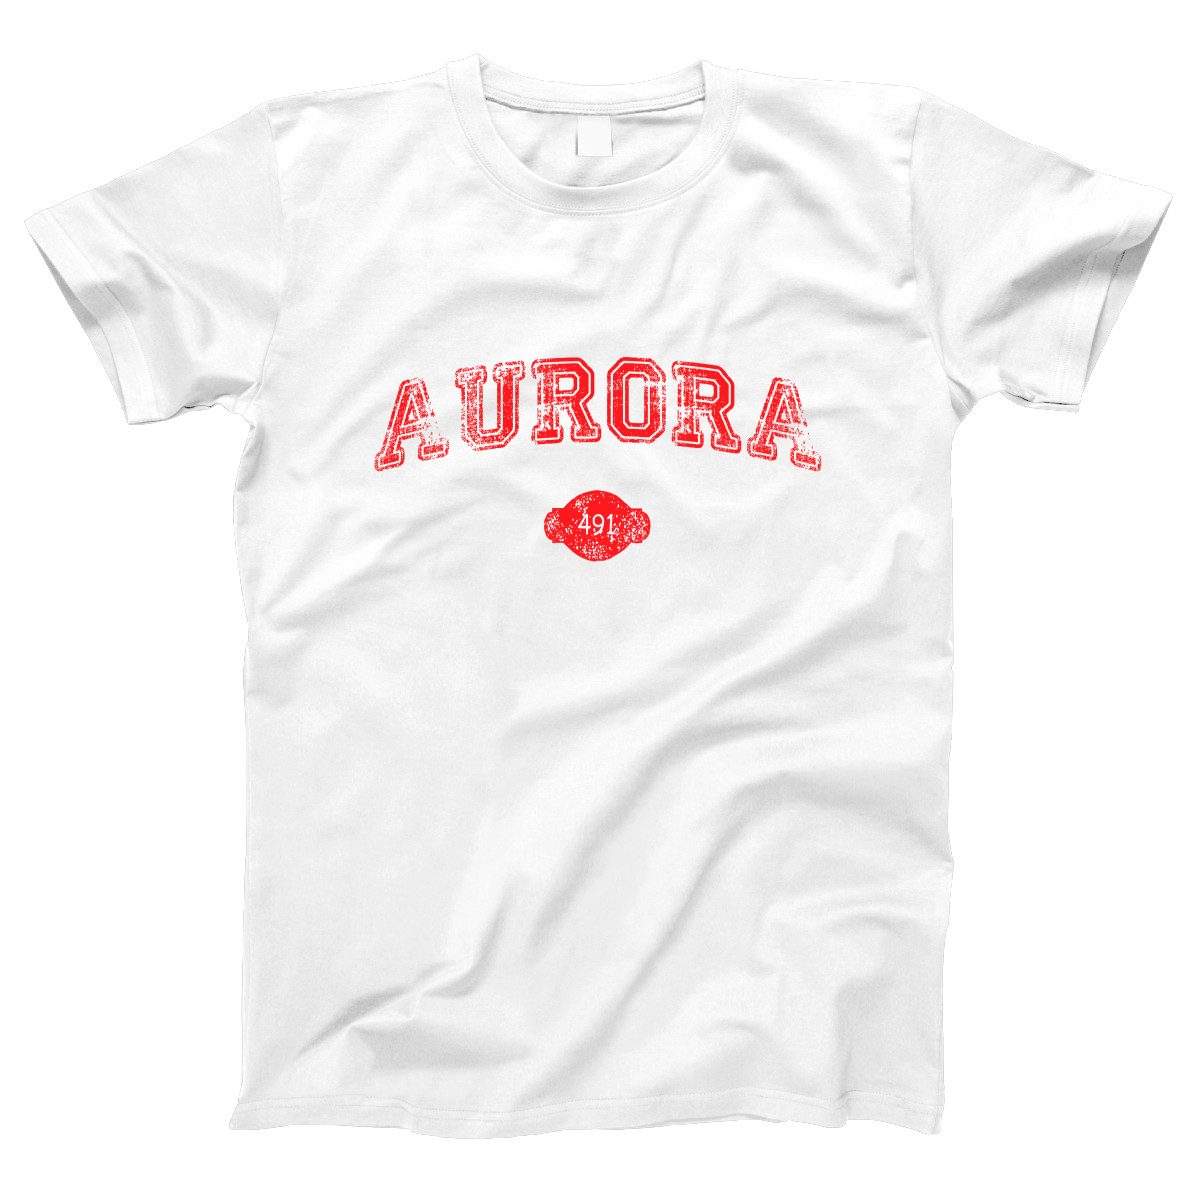 Aurora 1891 Represent Women's T-shirt | White